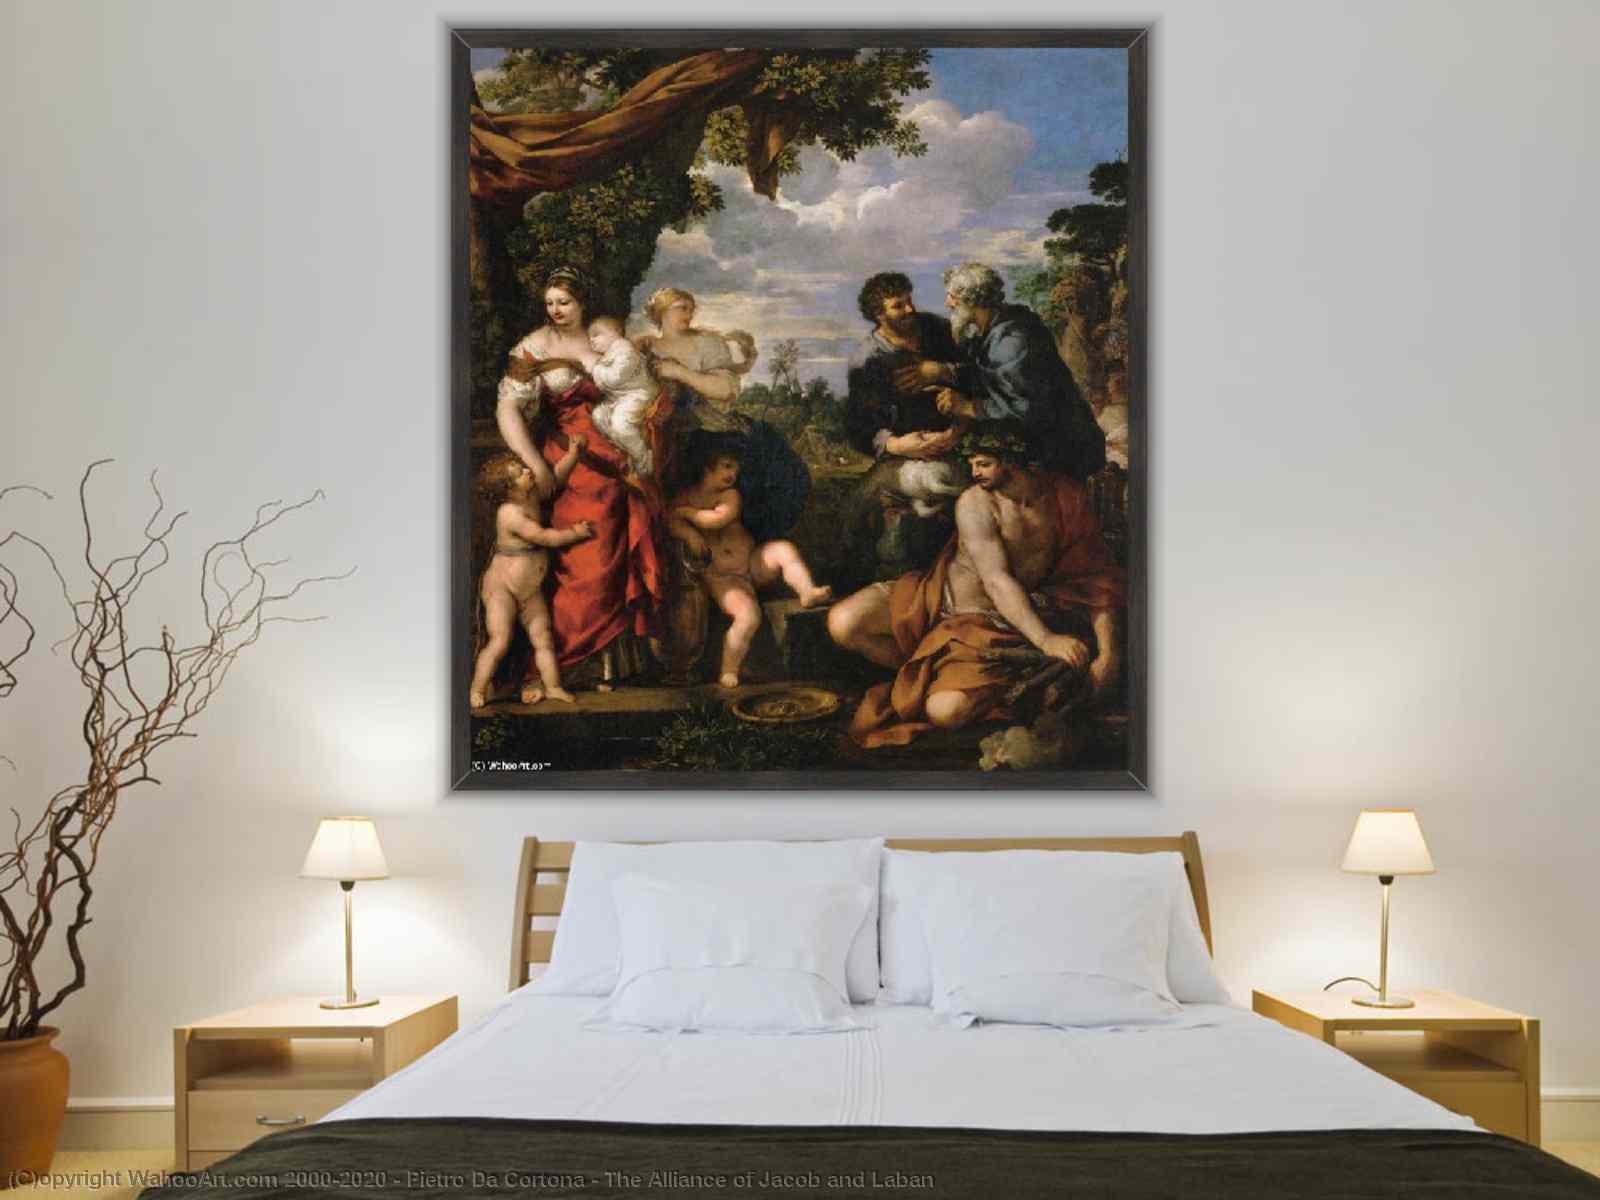 アート再現 ヤコブとラバンのアライアンス, 1630 バイ Pietro Da